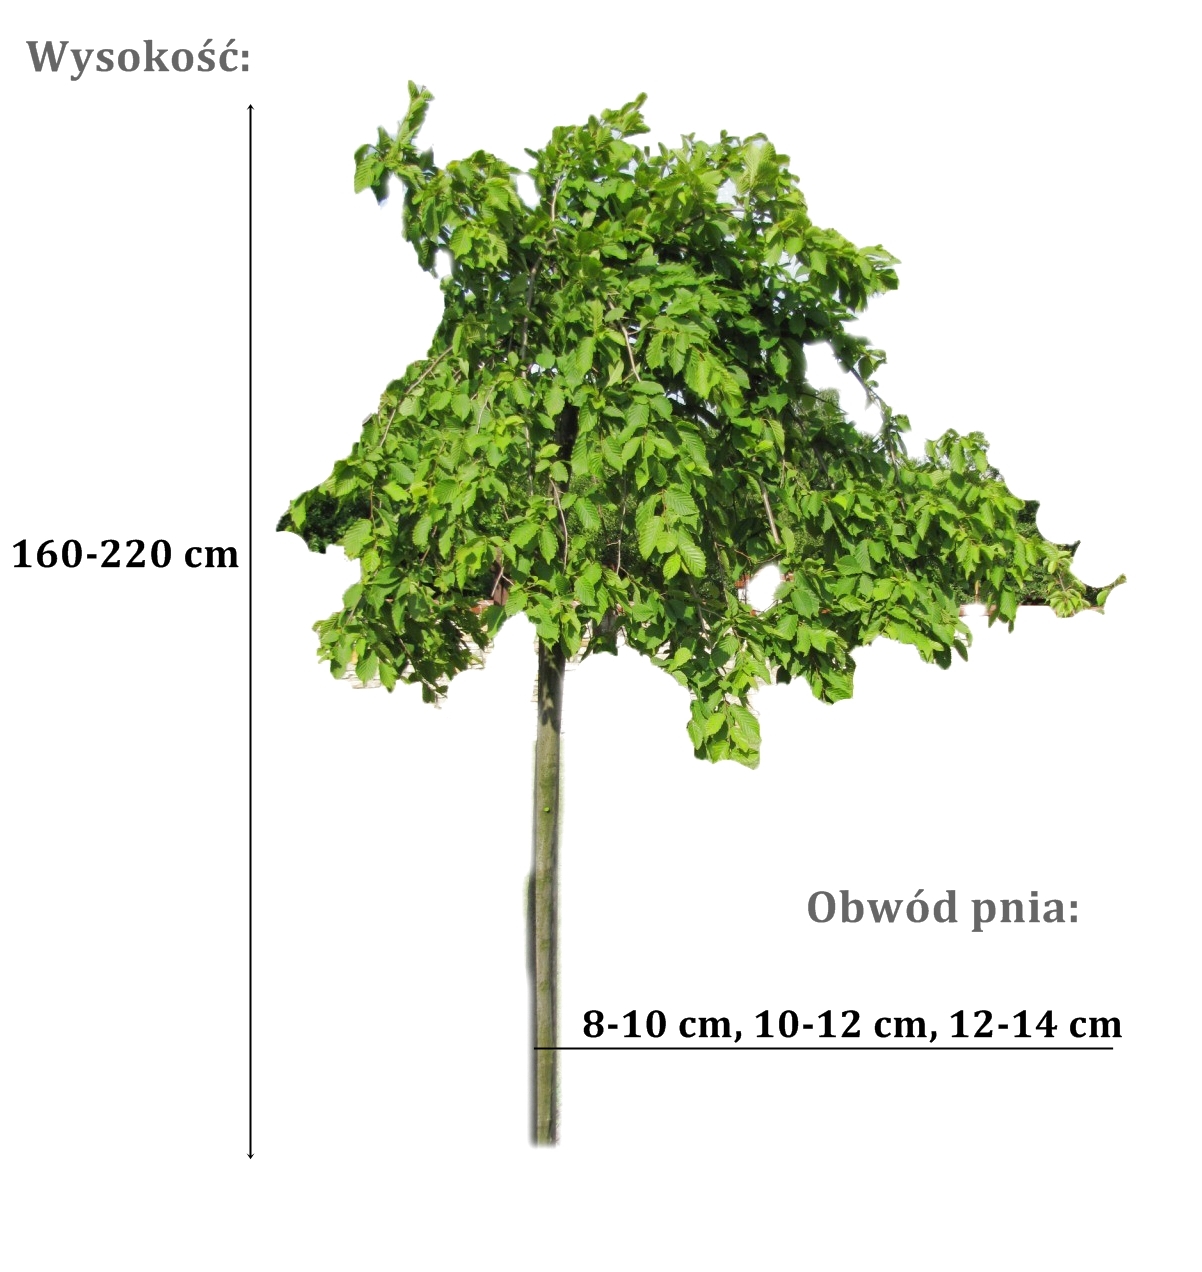 grab pendula - duze sadzonki drzewa o roznych obwodach pnia 